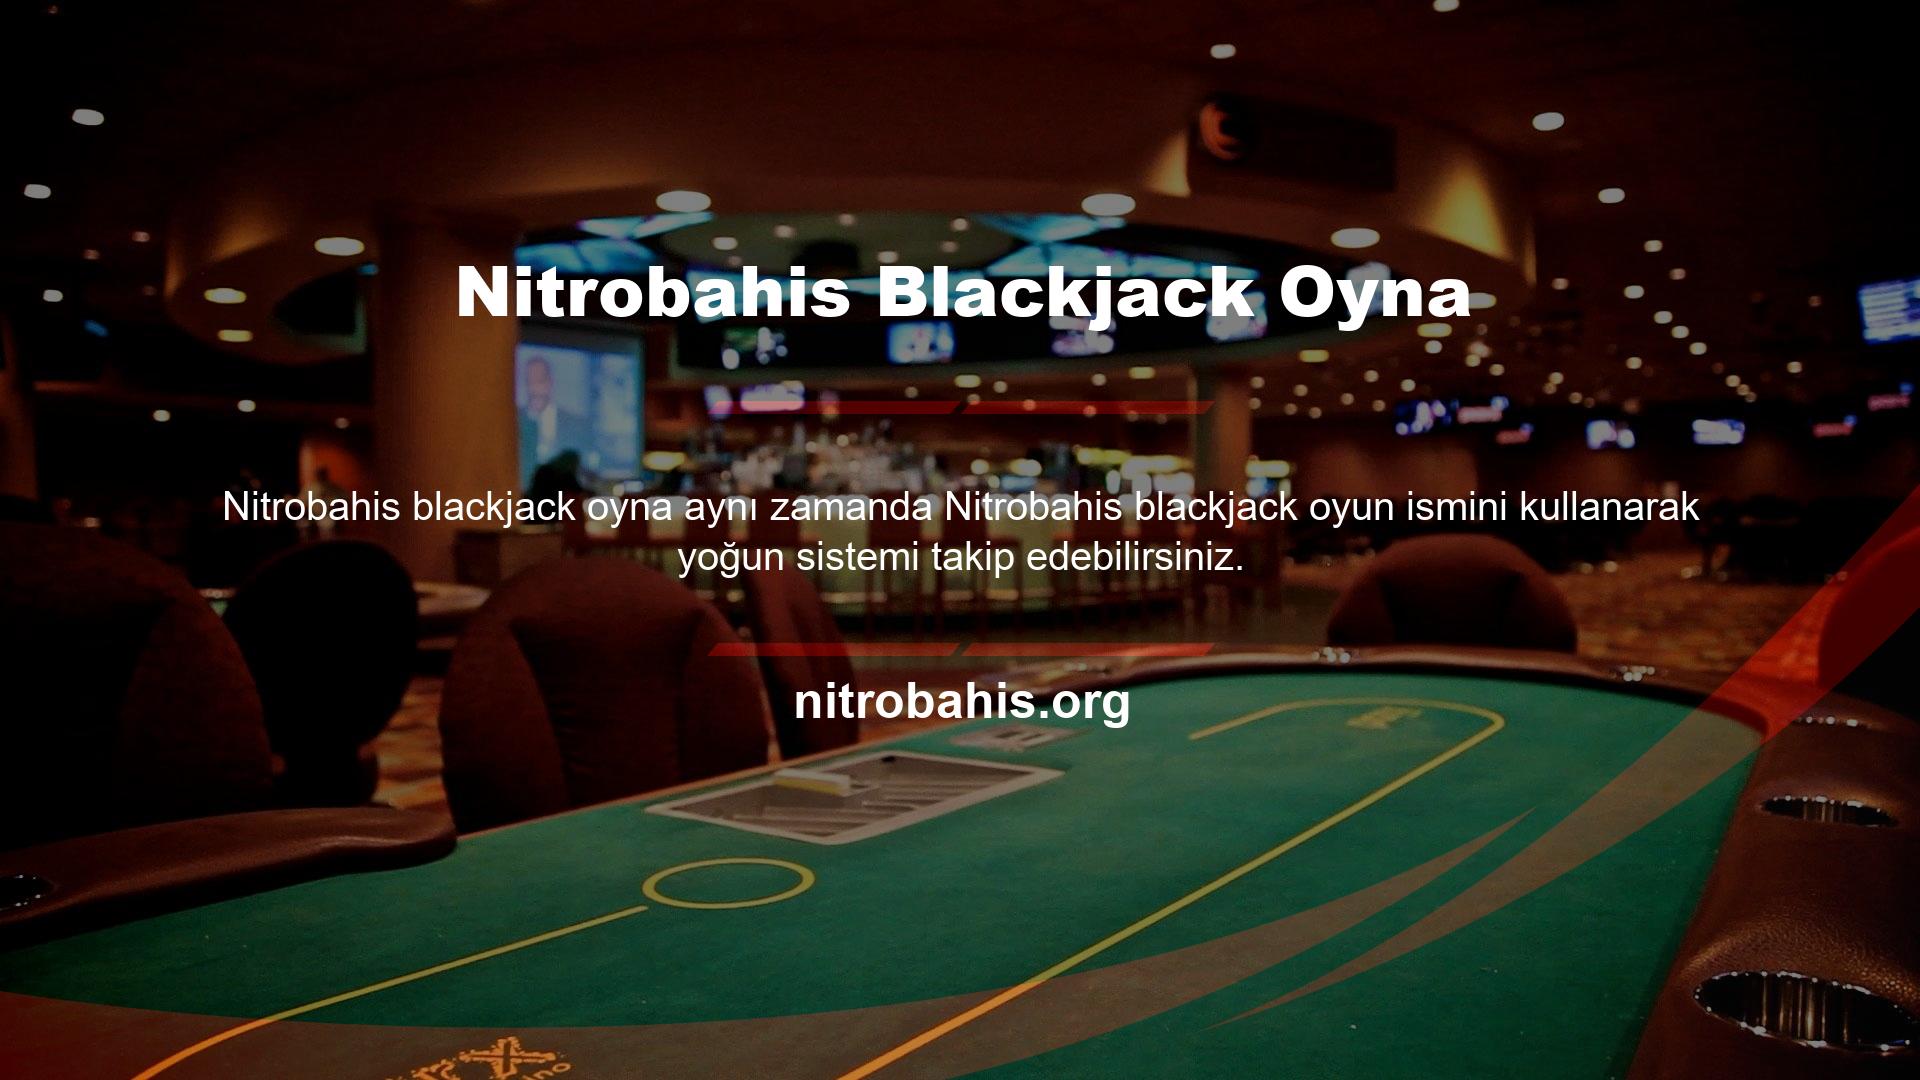 Bu bağlamda web sitesi yöneticisi, casino ve canlı casino bölümlerinde ayrıntılı blackjack oyunları sunmaya odaklanmaktadır